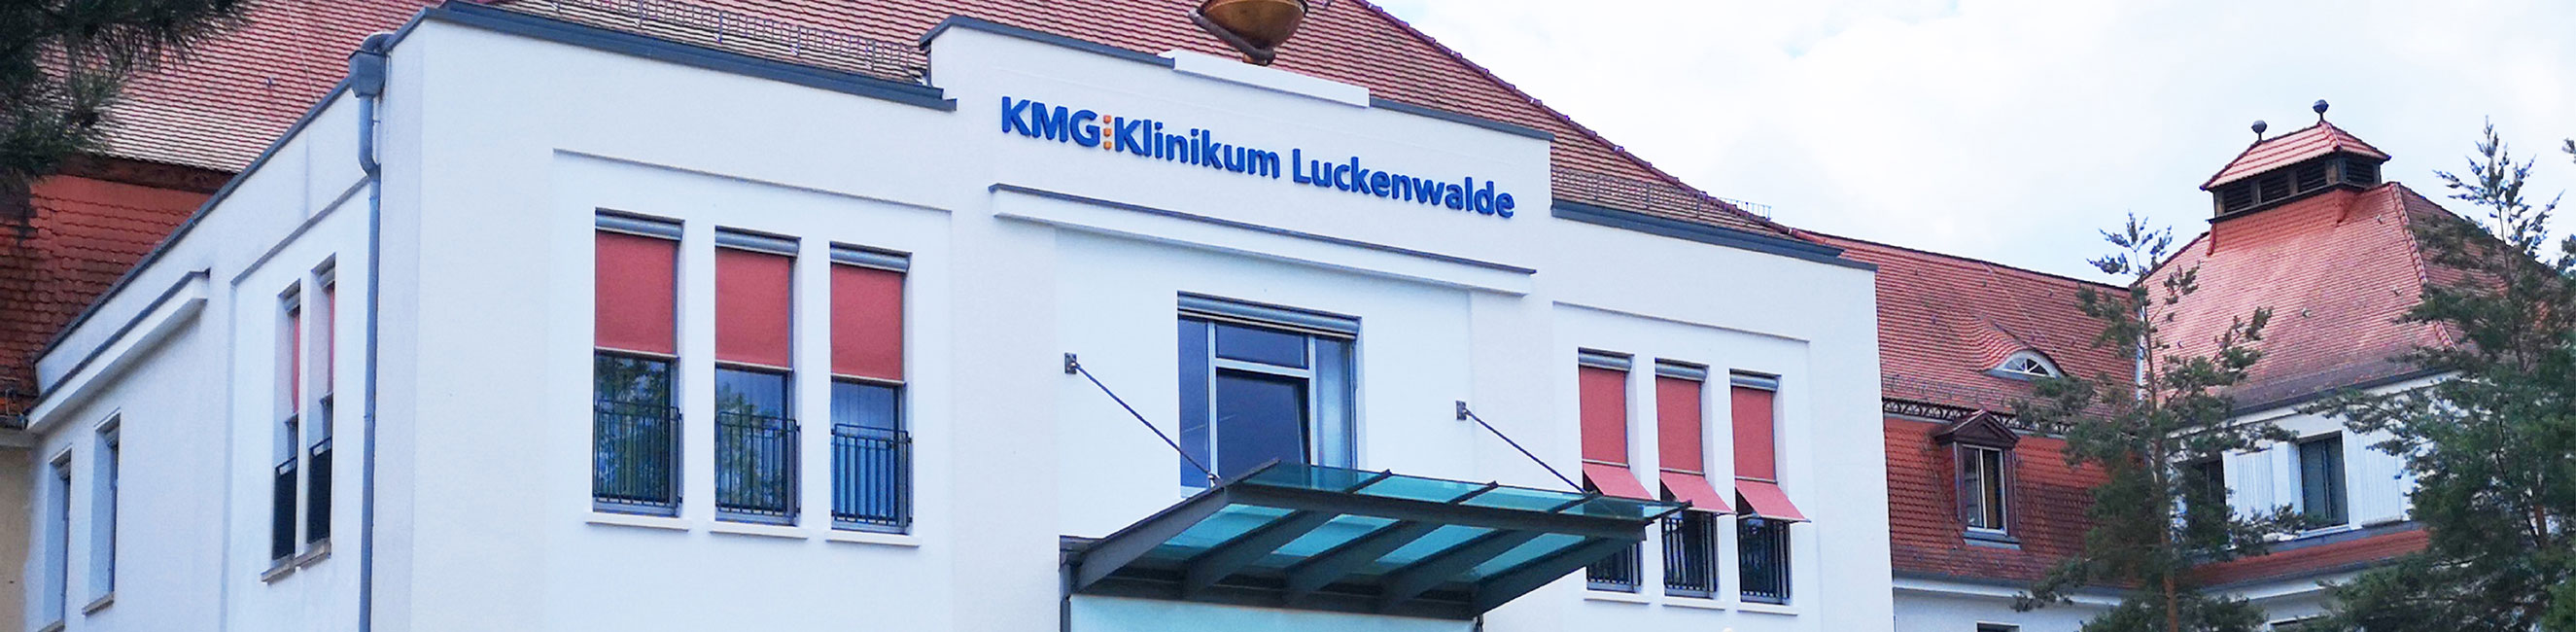 Interdisziplinäre ambulante Chemotherapie und Tumornachsorge KMG Klinikum Luckenwalde